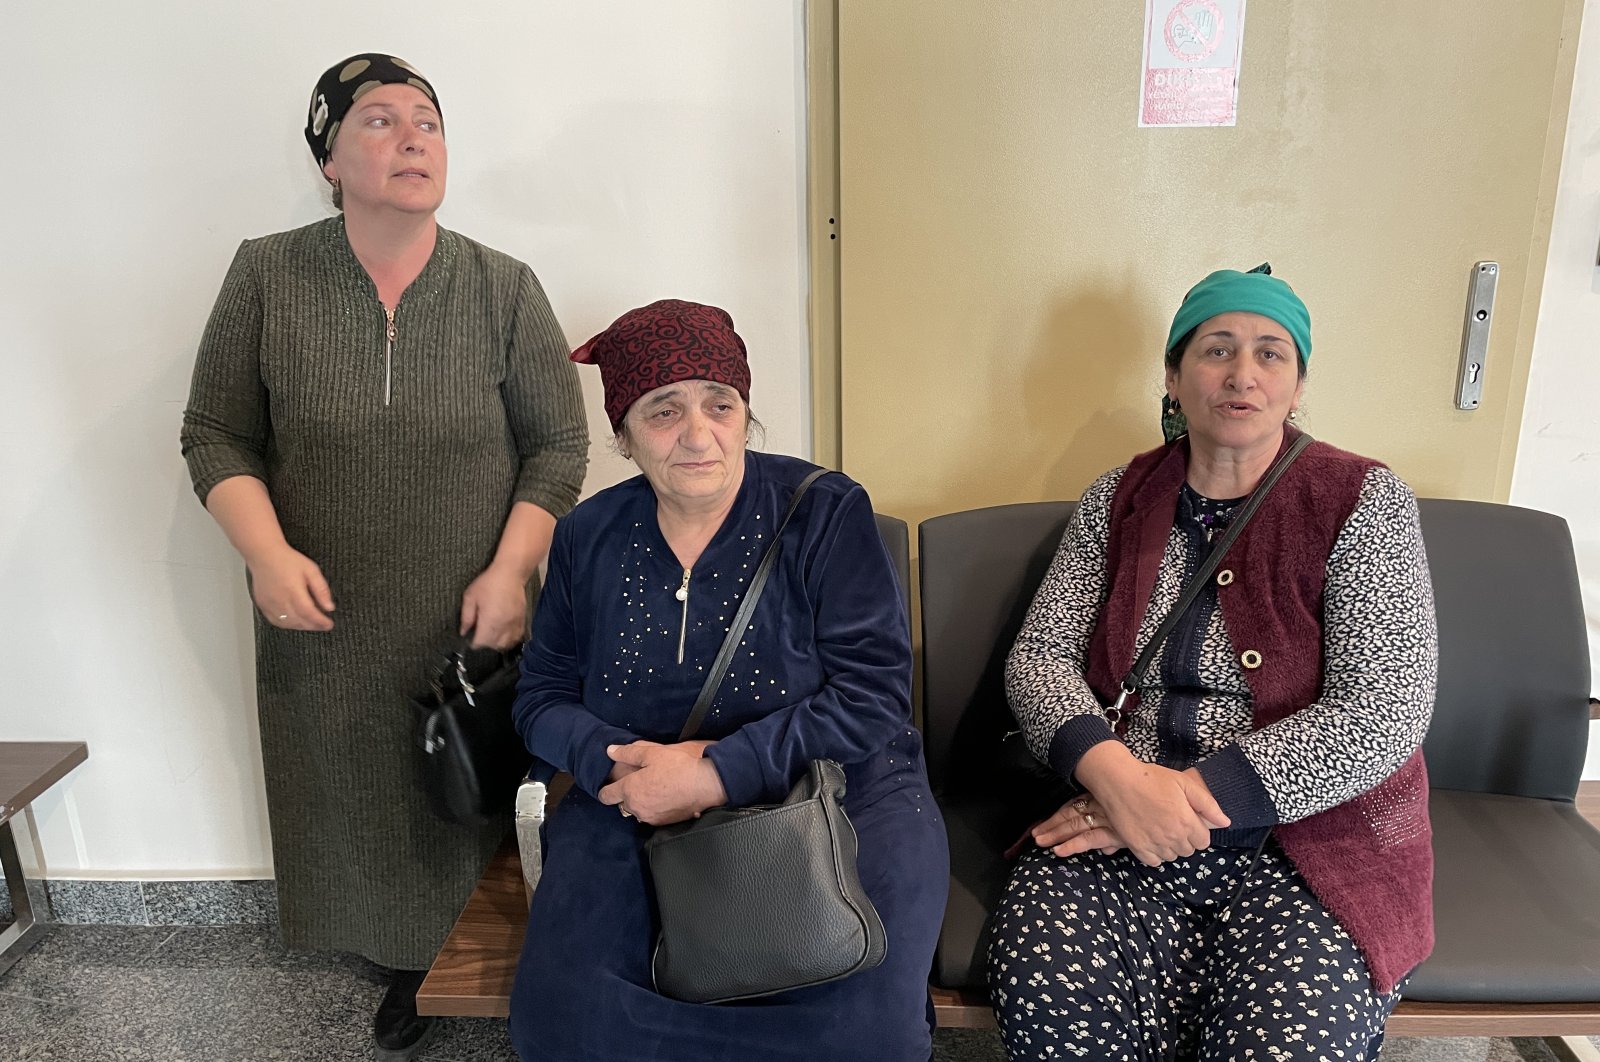 Orang Turki Meskhetian menangis karena meninggalkan suami, anak-anak di tengah perang